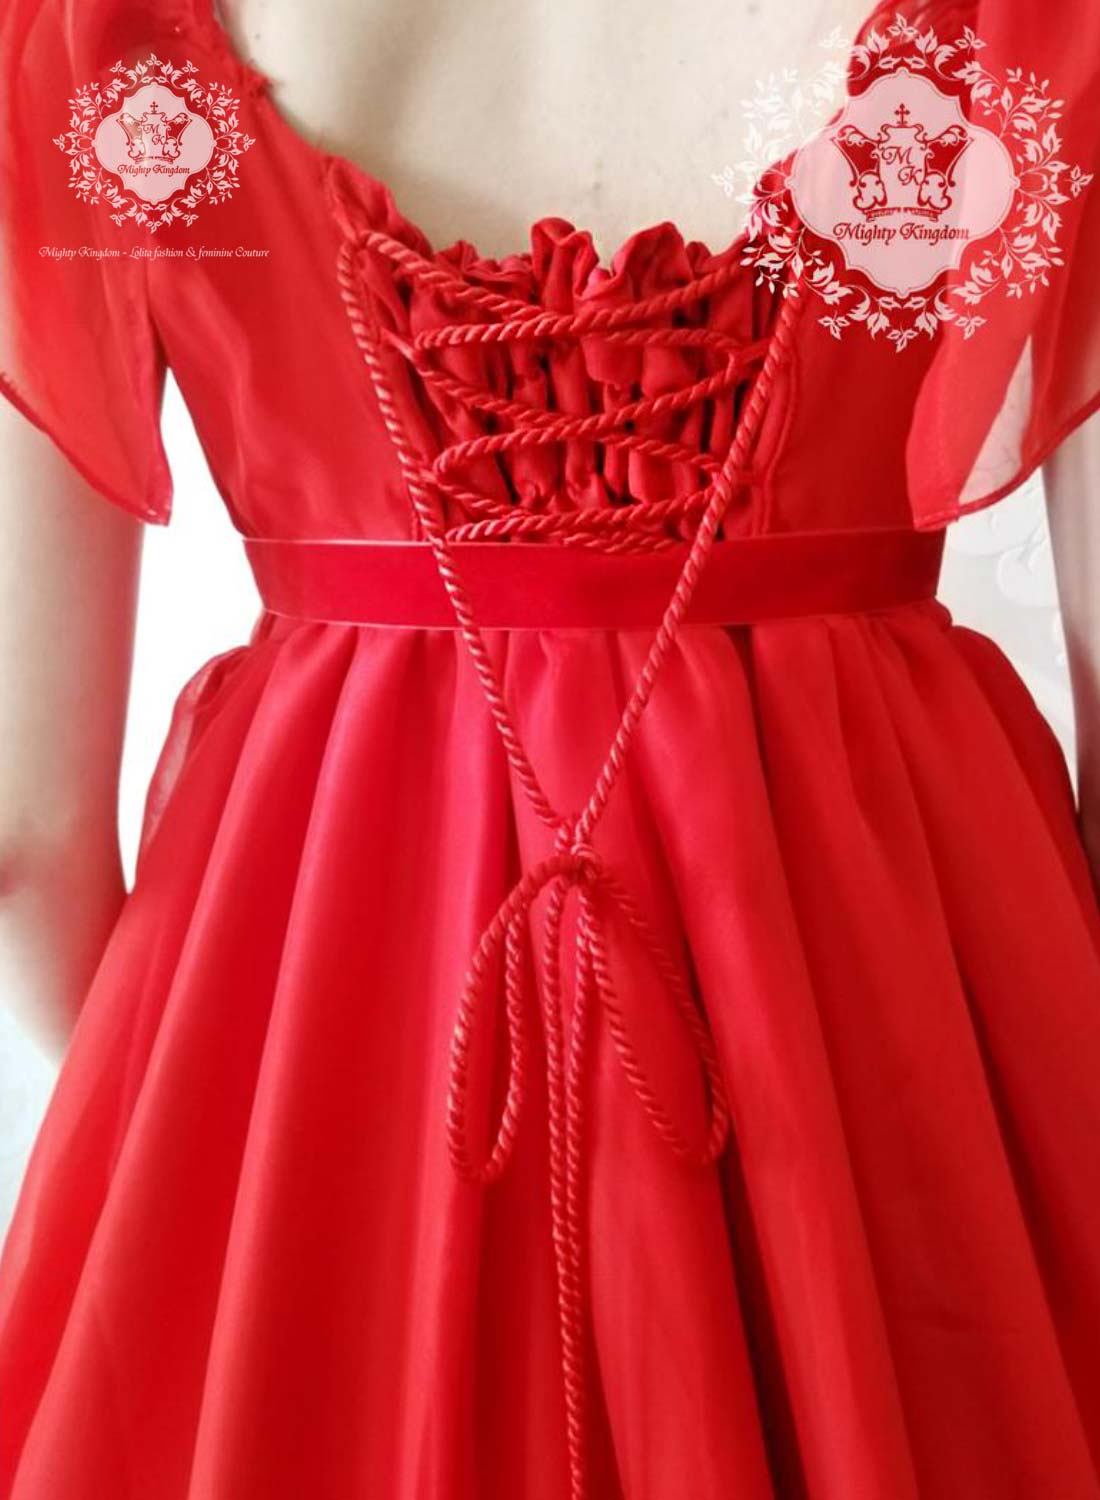 Rückansicht Chiffon Kleid in rot mit Schnürrung getragen